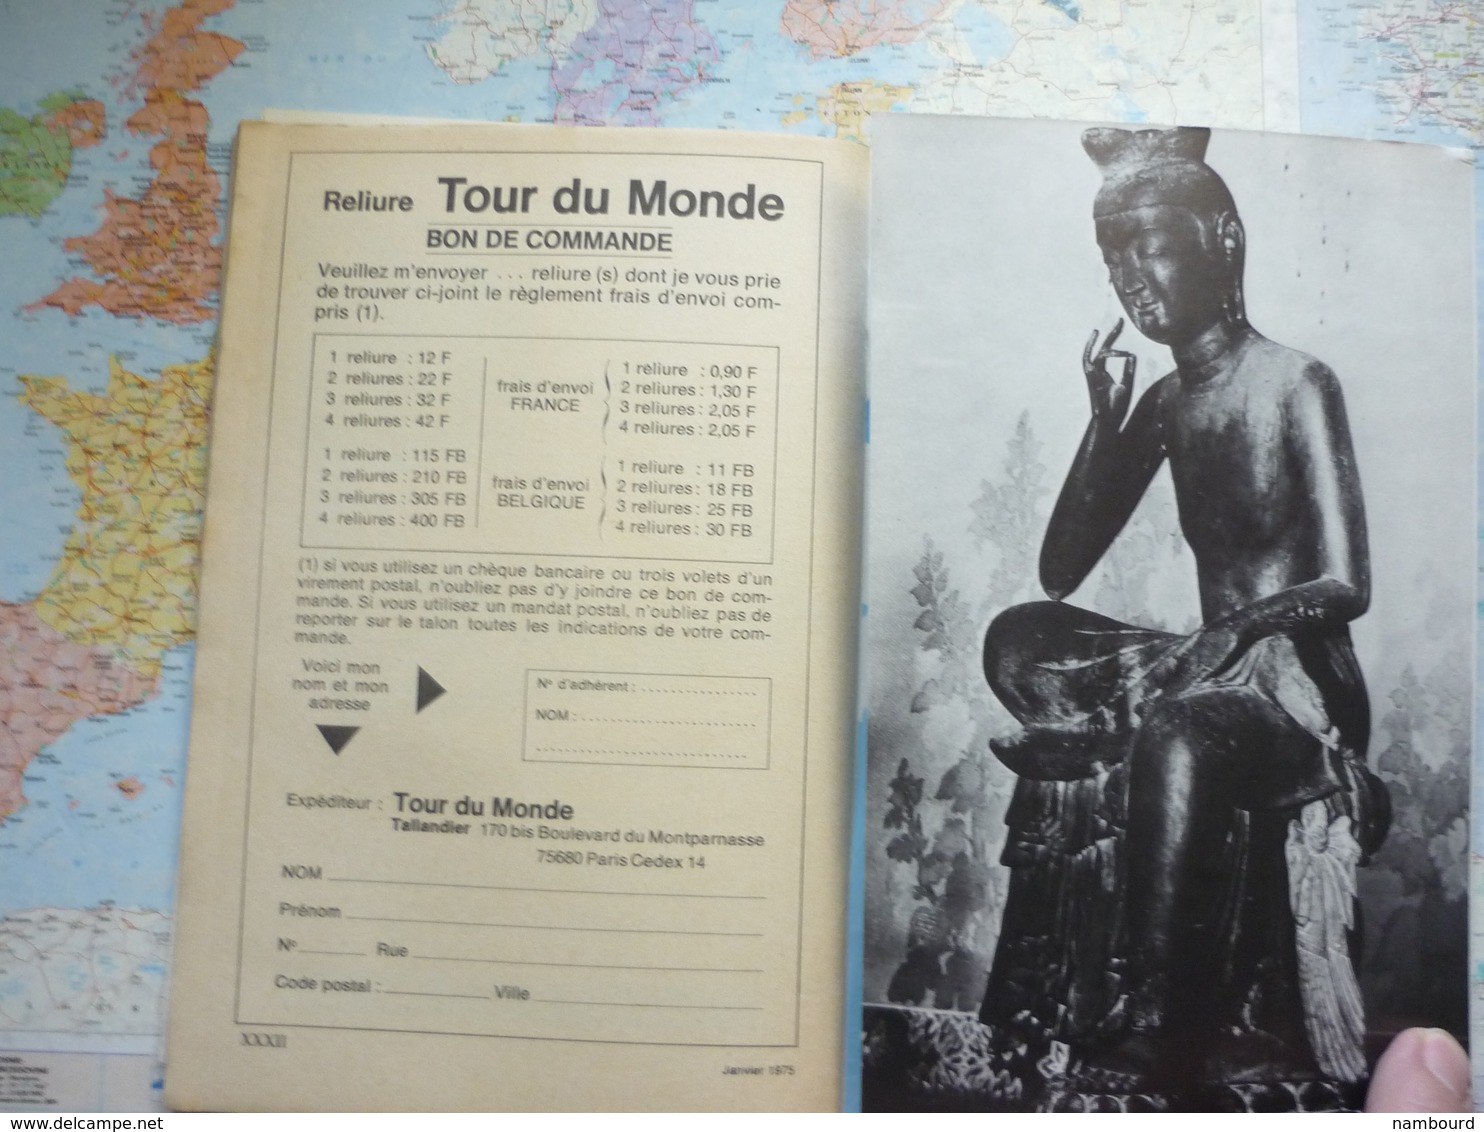 Geographia Tour du Monde Hors série N° spécial Les Bouddhistes Janvier 1975